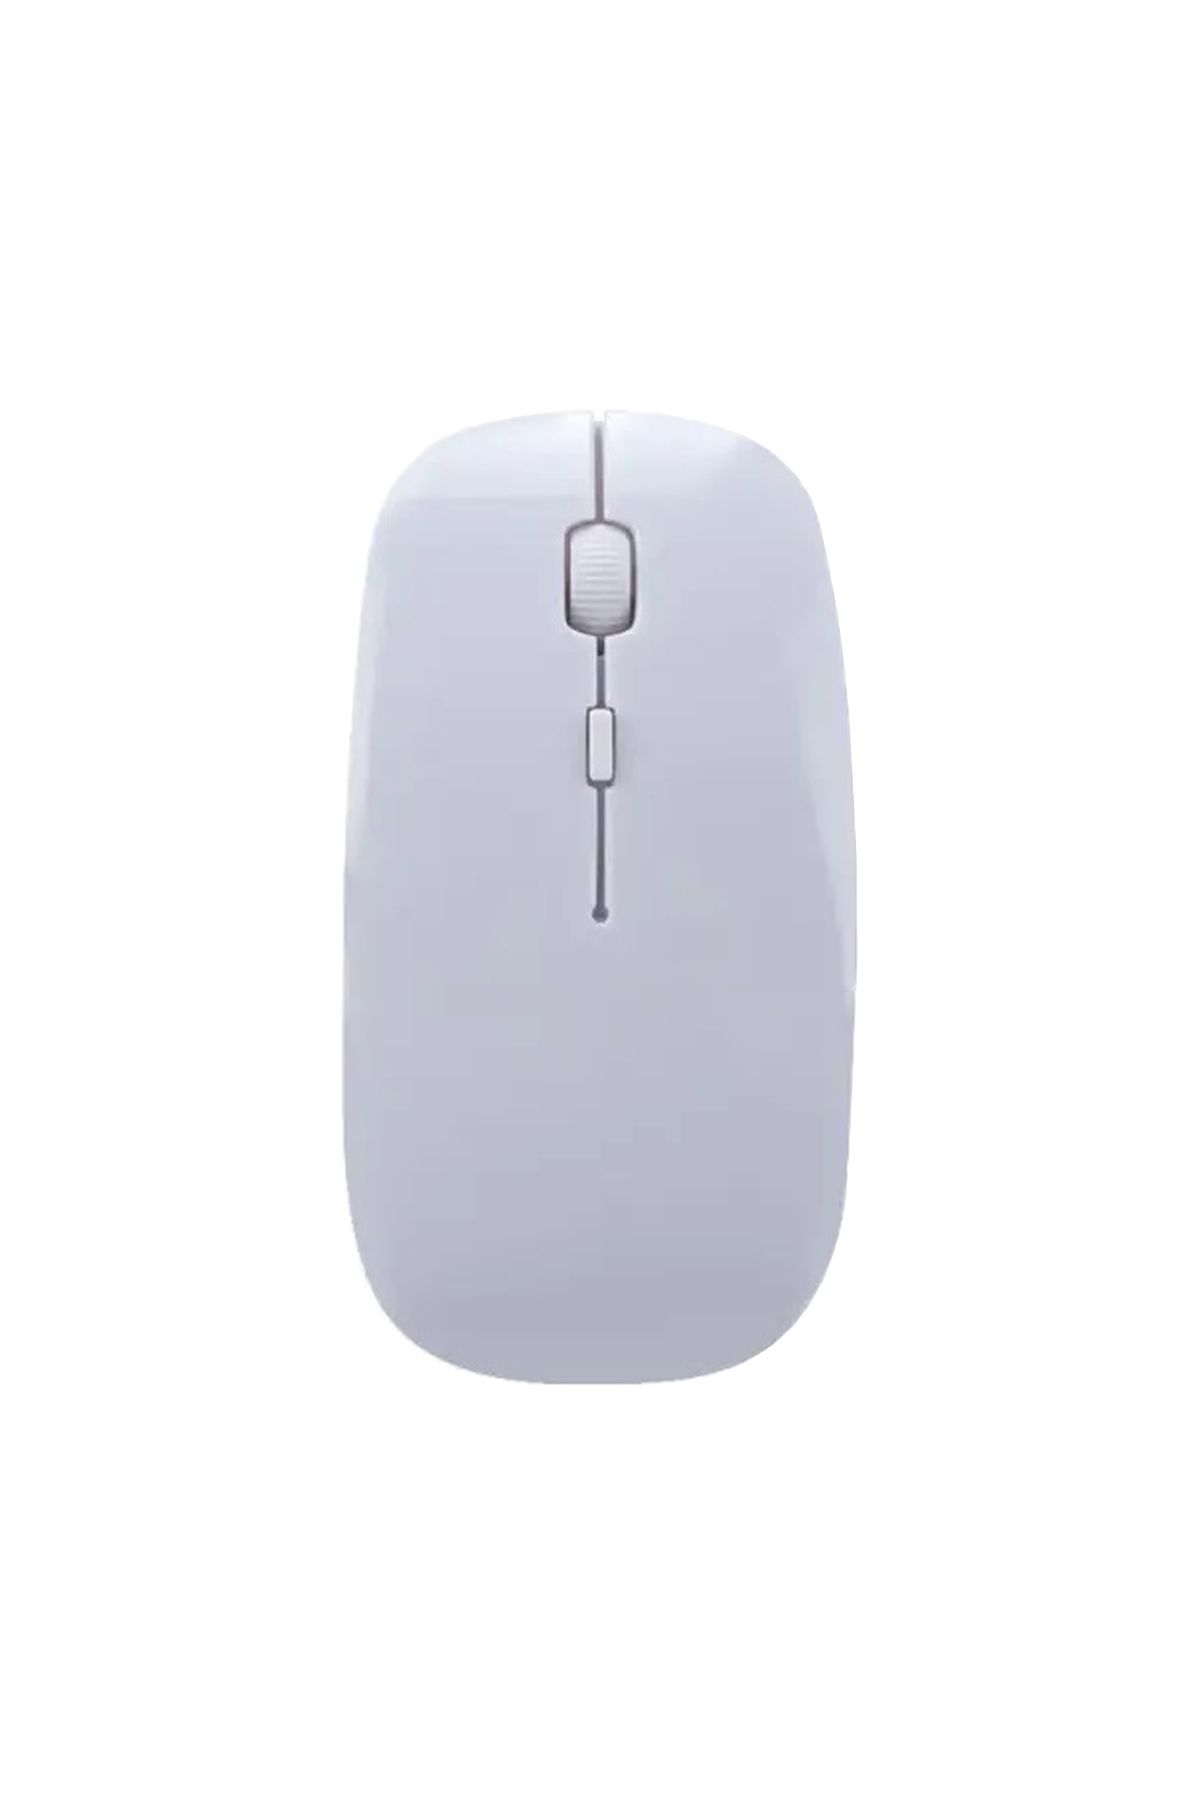 Rastpage Wireless 2.4Ghz Slim Kablosuz Mouse